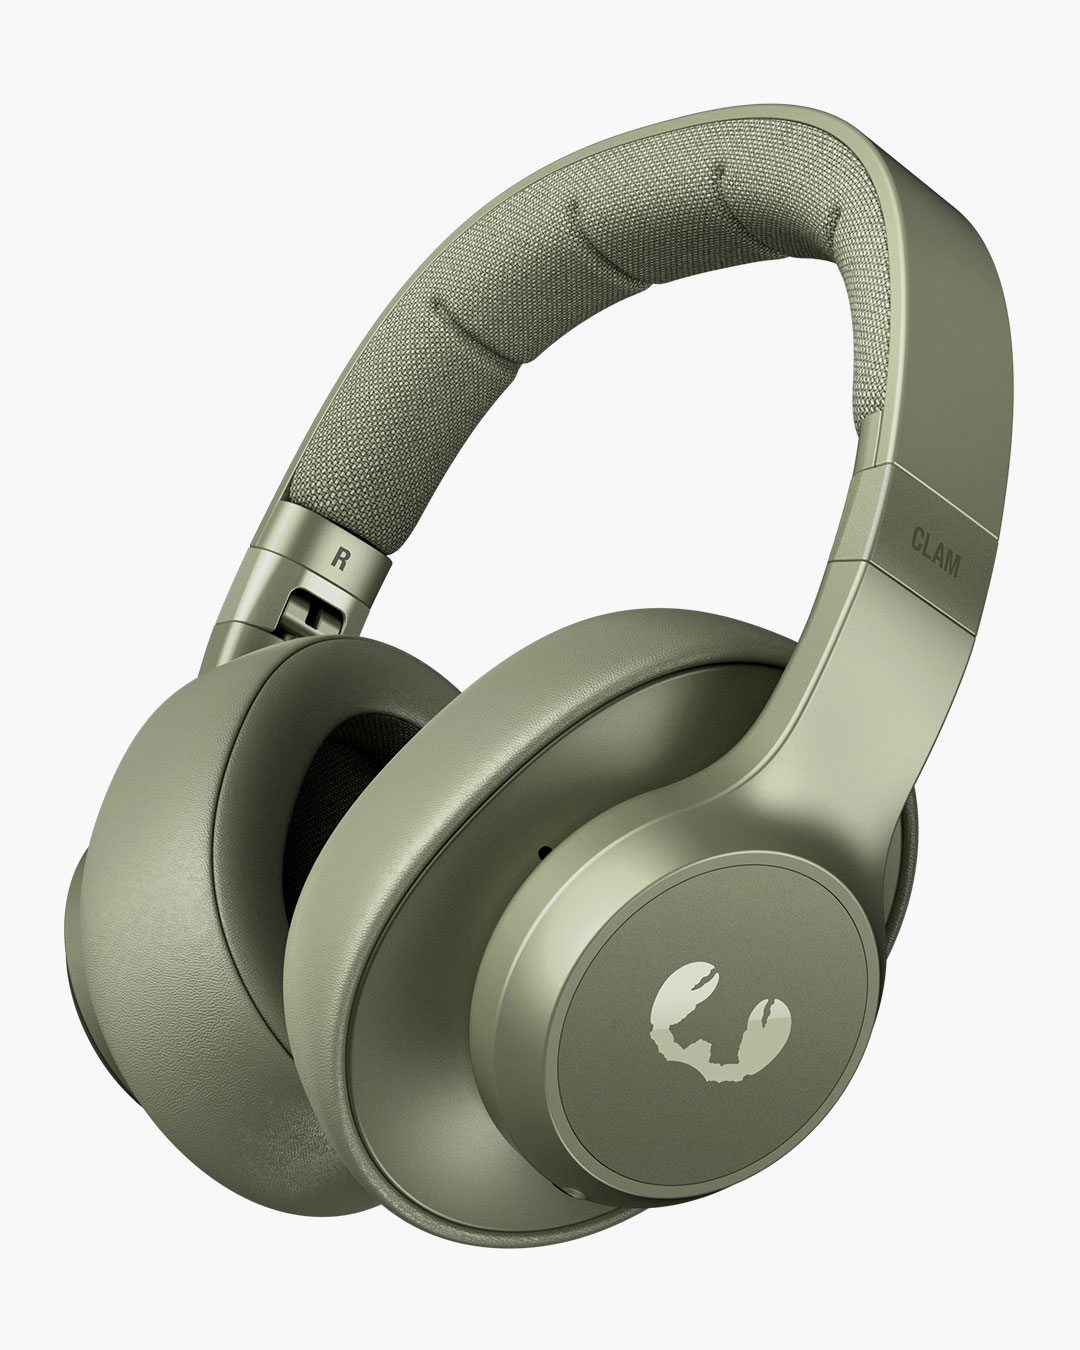 Fresh 'n Rebel - Clam - Wireless over-ear headphones - Dried Green